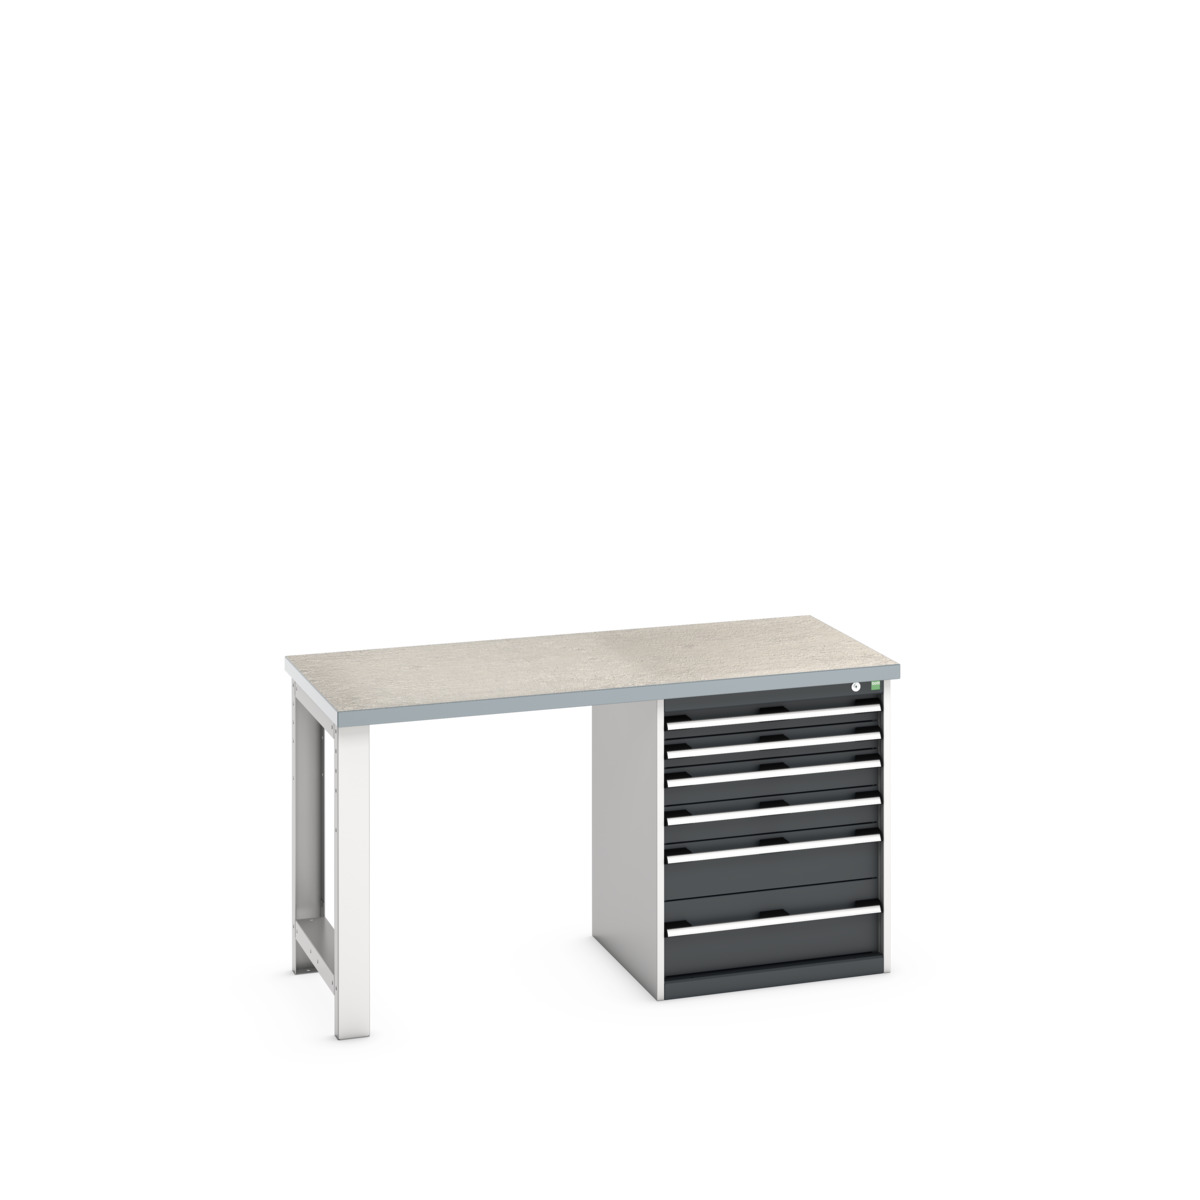 41003141.19V - cubio pedestal bench (lino)